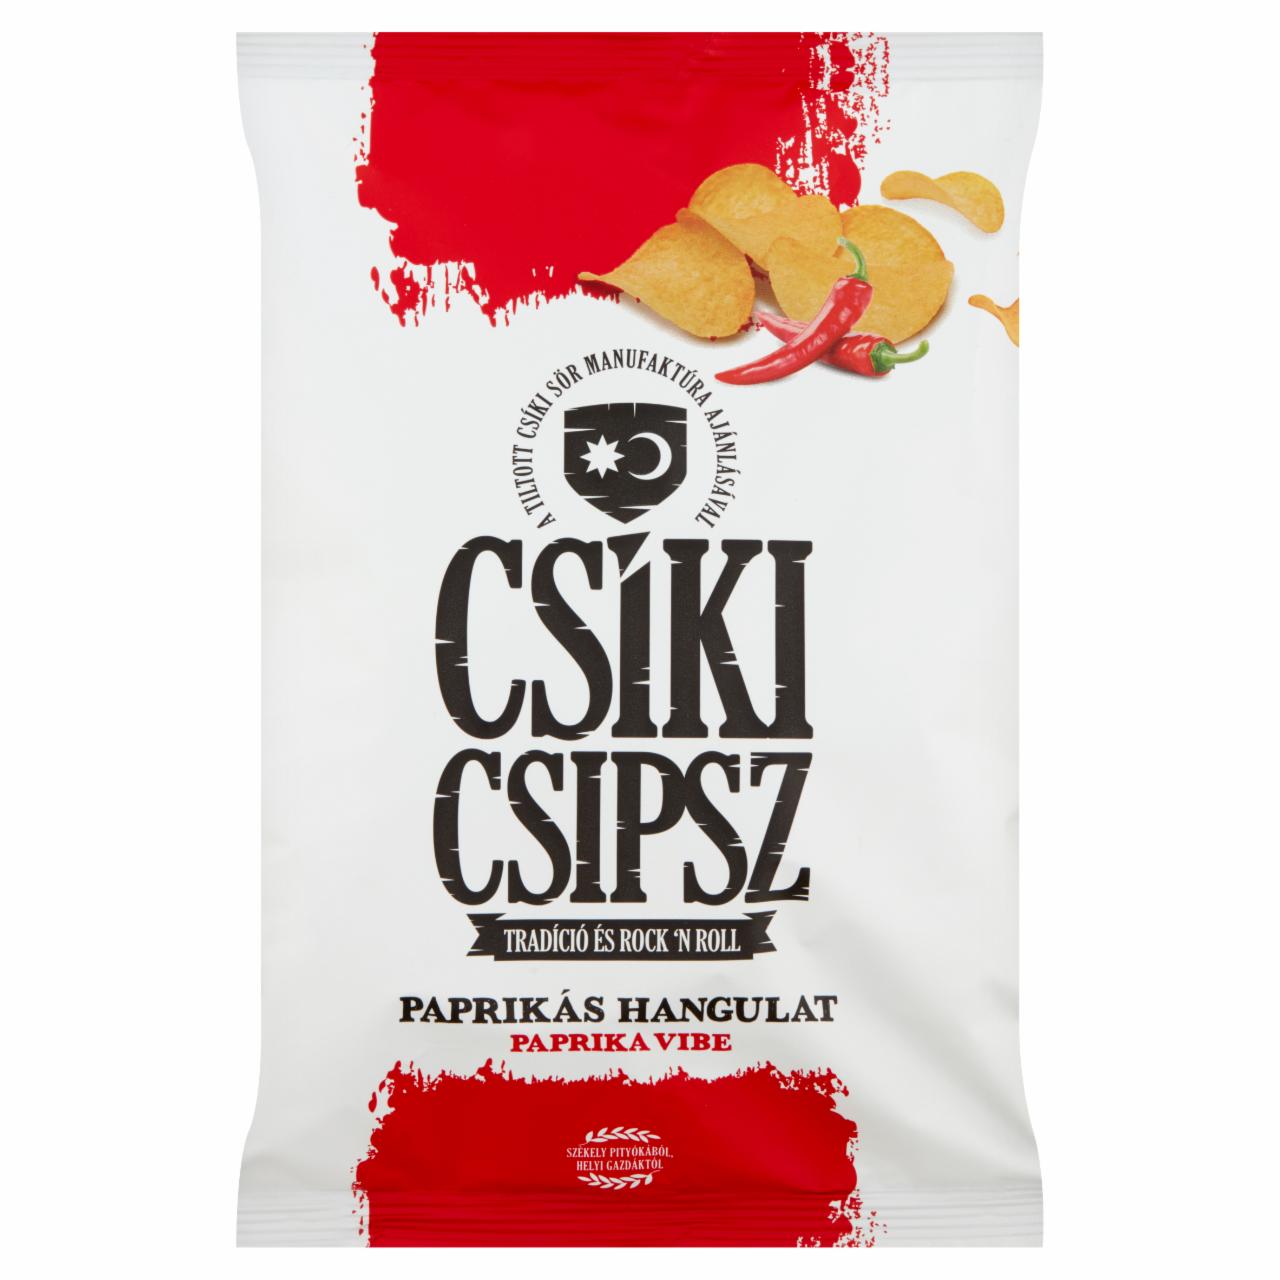 Képek - Csíki Csipsz Paprikás Hangulat paprikás ízesítésű burgonyacsipsz 70 g